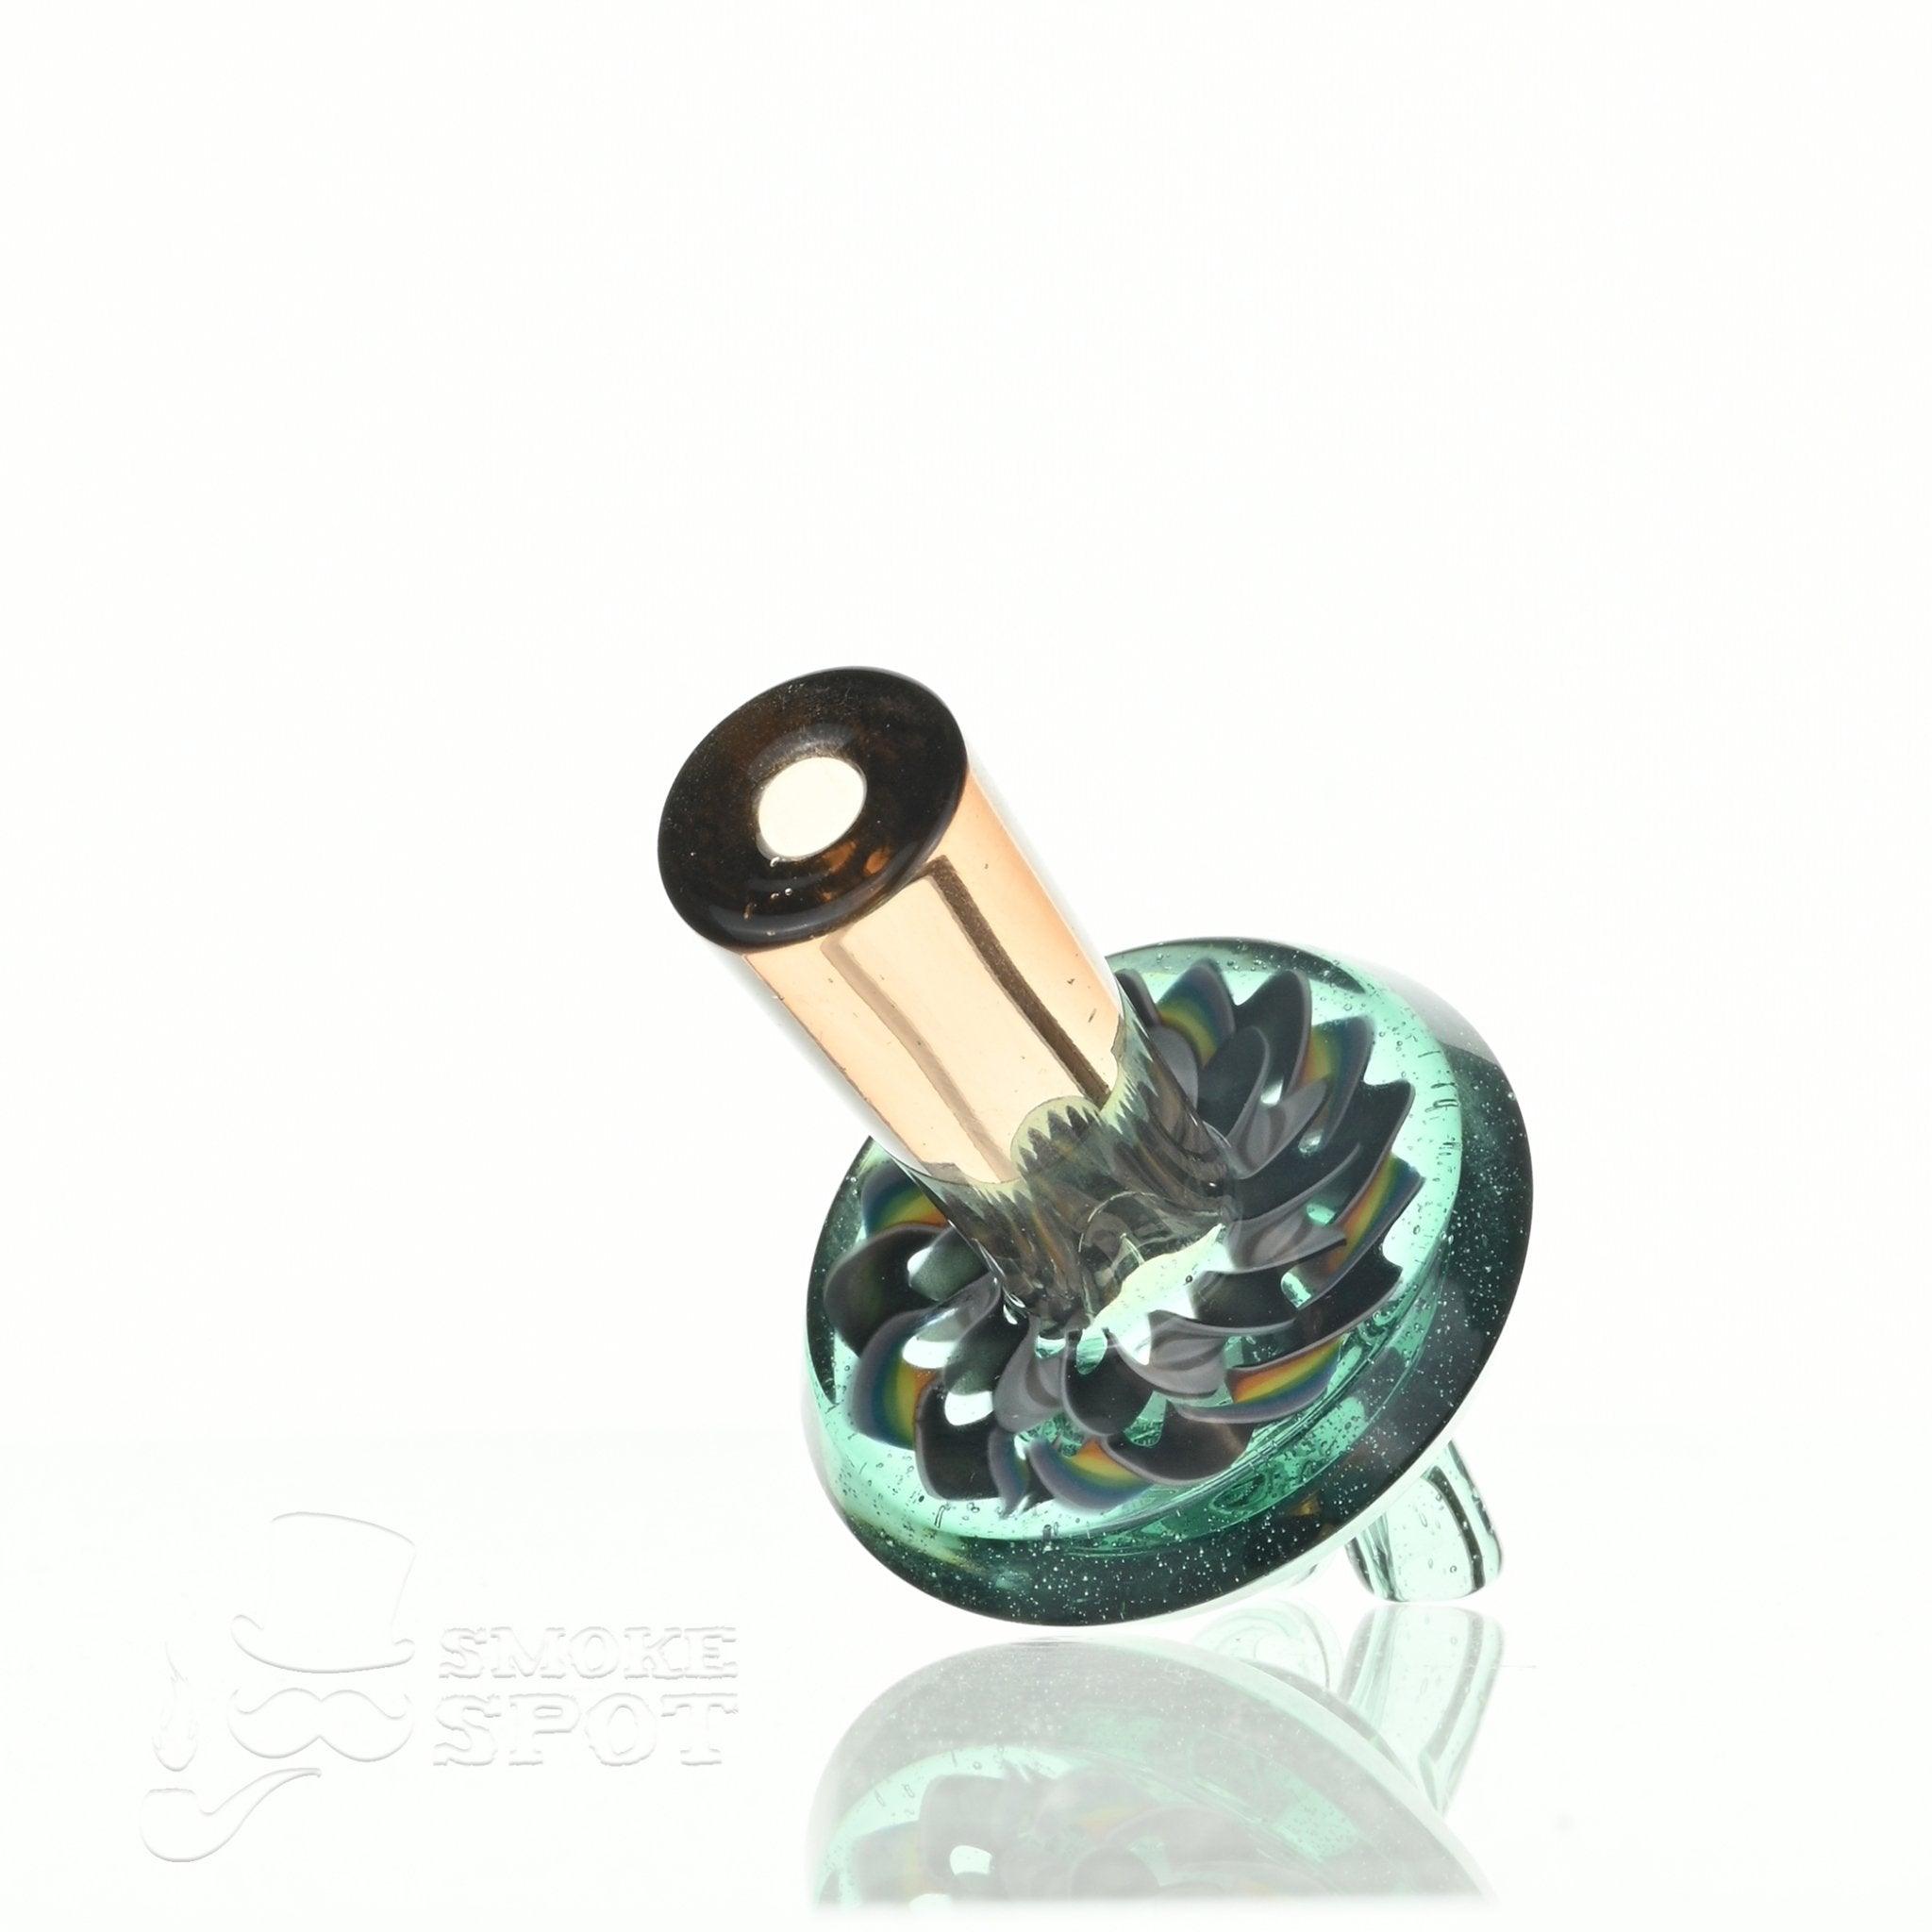 C-Lanni Permajen x Topaz spinner cap - Smoke Spot Smoke Shop